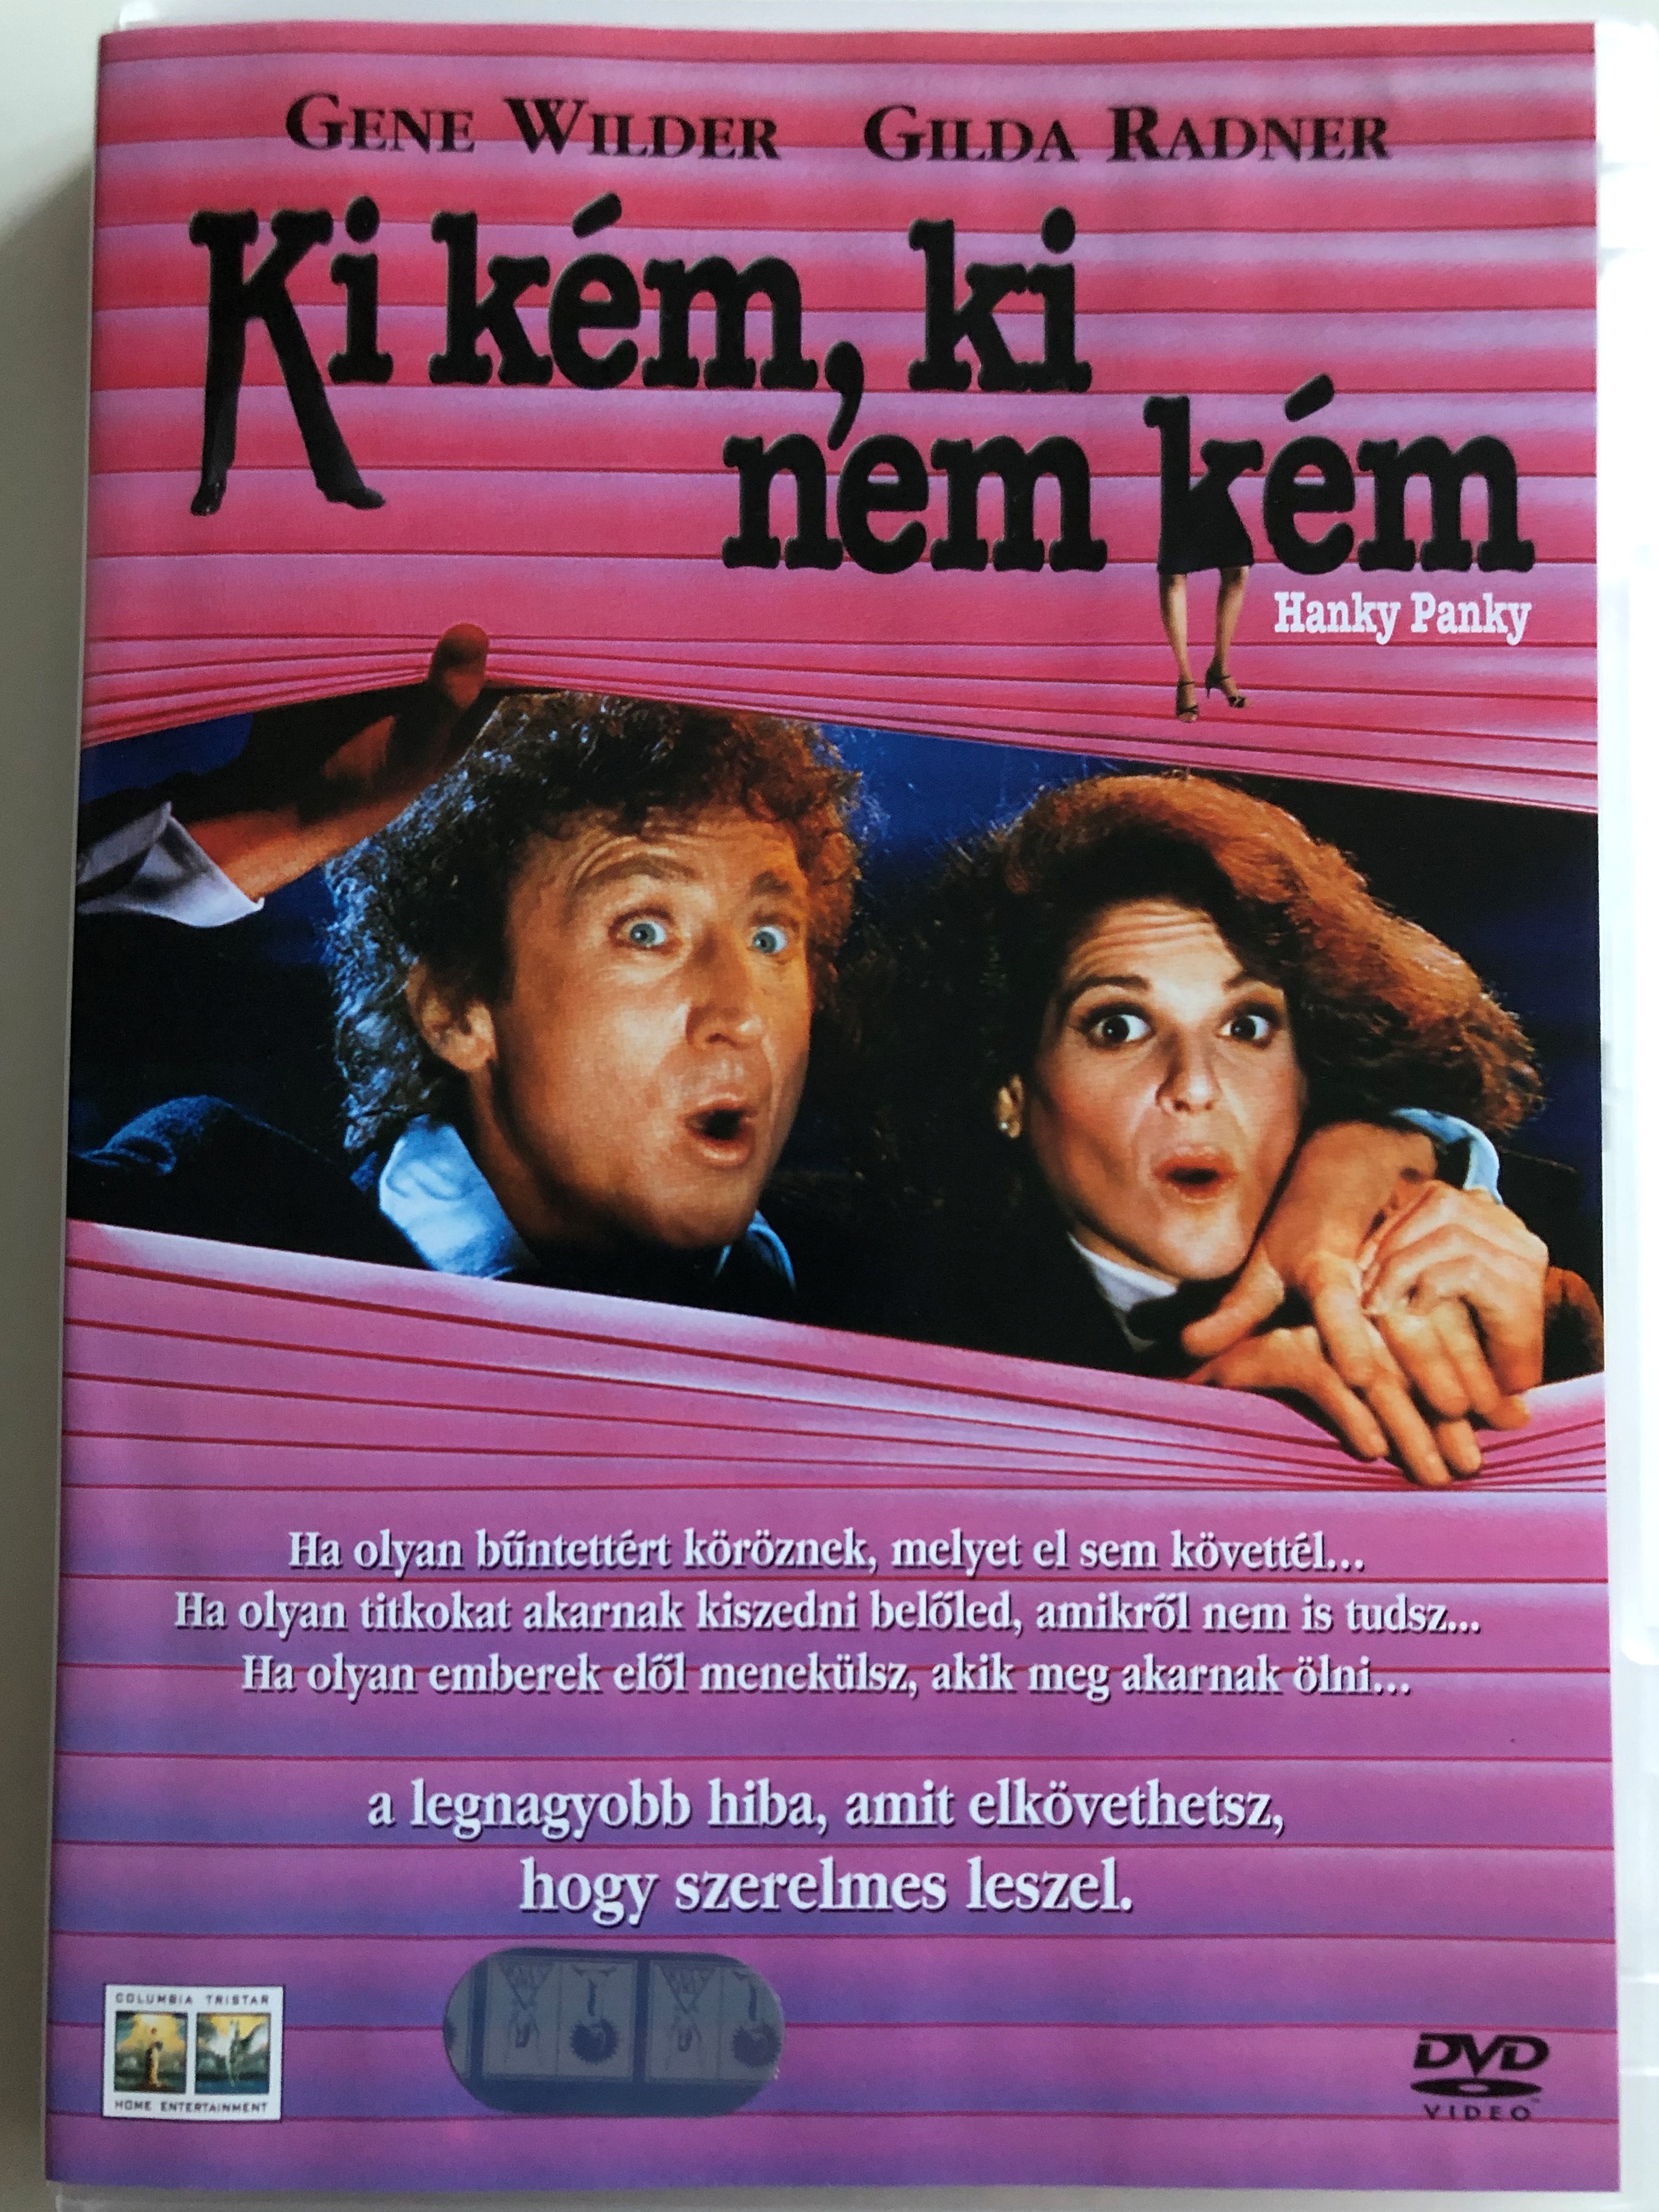 hanky-panky-dvd-1982-ki-k-m-ki-nem-k-m-directed-by-sidney-poitier-starring-gene-wilder-gilda-radner-kathleen-quinlan-richard-widmark-johnny-brown-1-.jpg